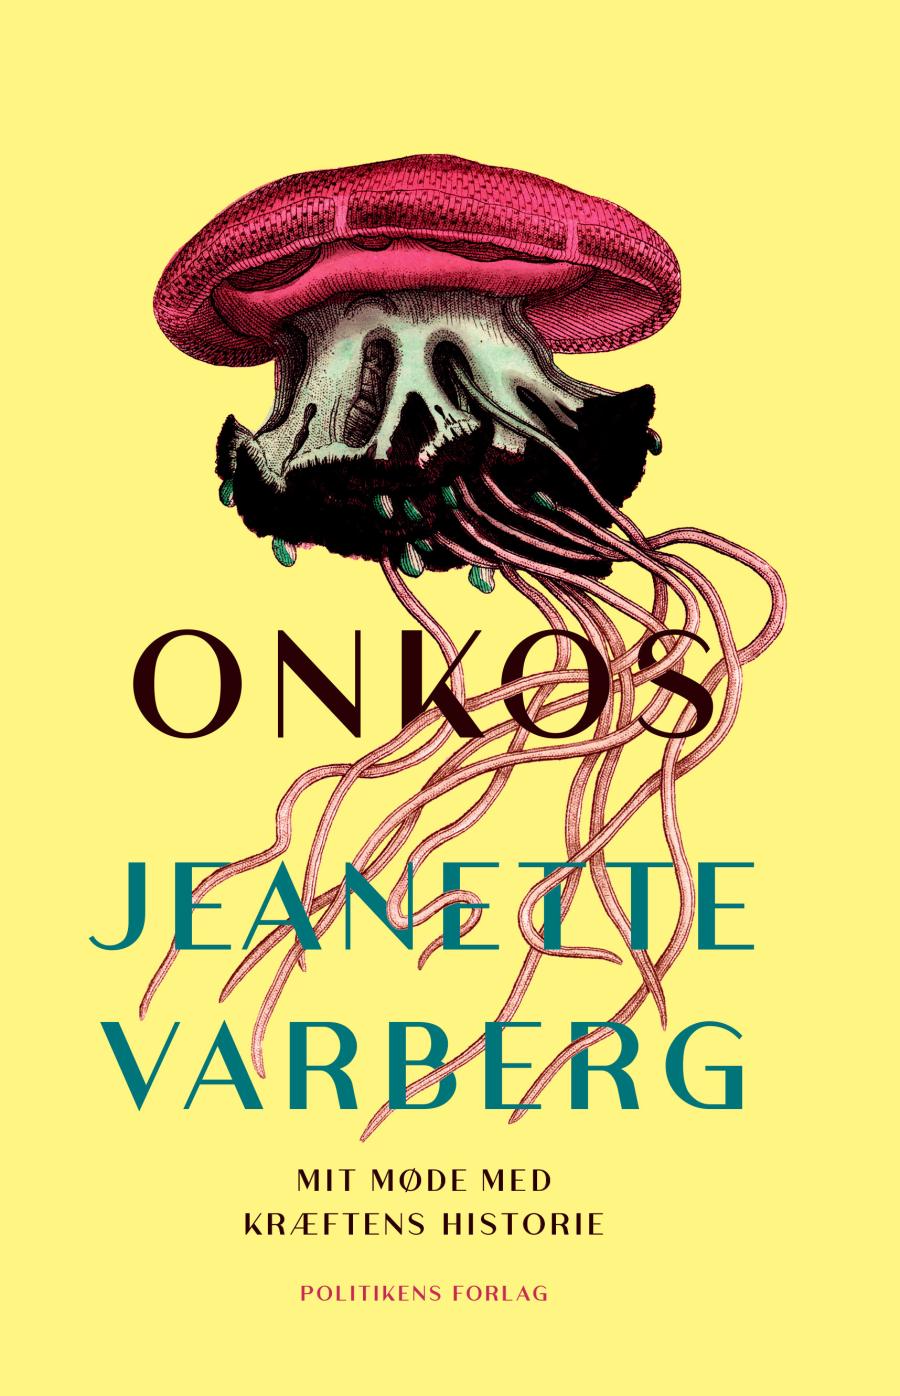 Onkos af Jeanette Varberg